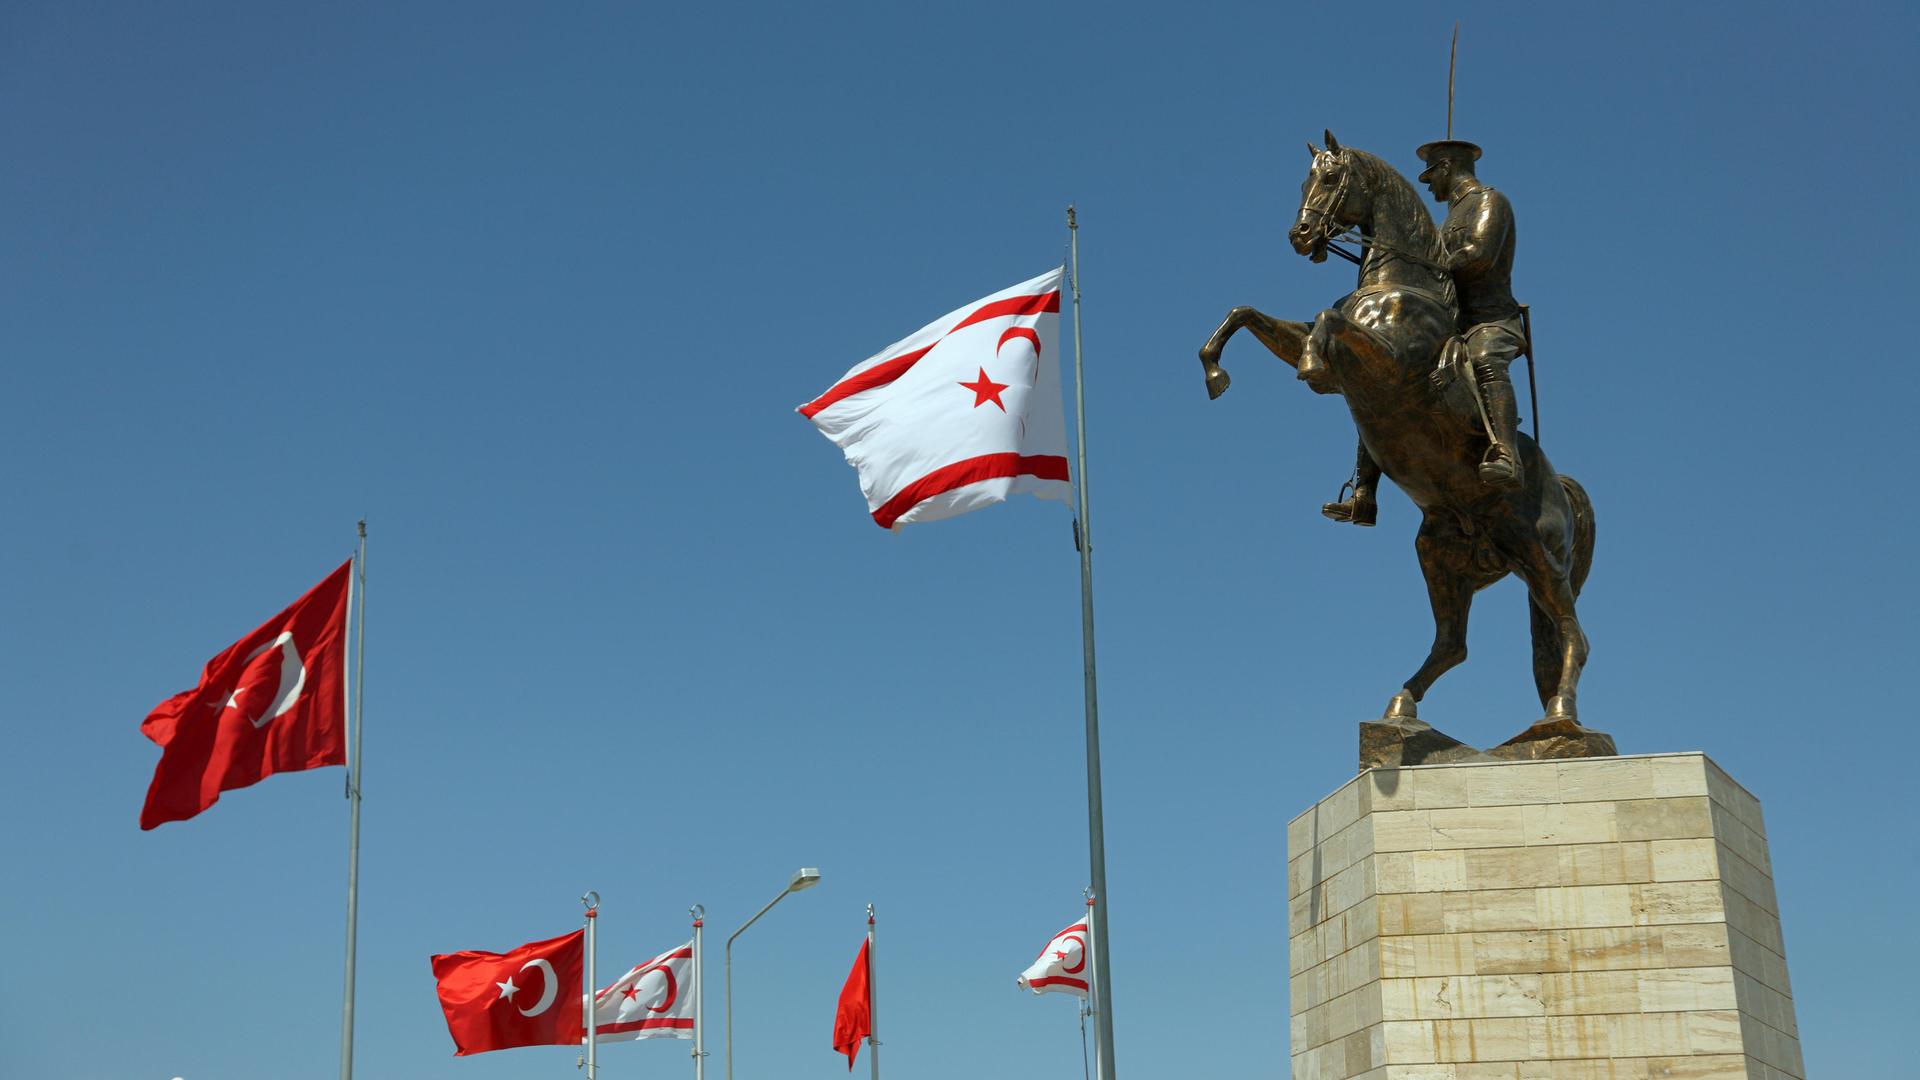 Statue des türkischen Staatsgründers Atatürk auf einem Pferd. Daneben sind türkisch und nordzyprische Nationalflaggen zu sehen.